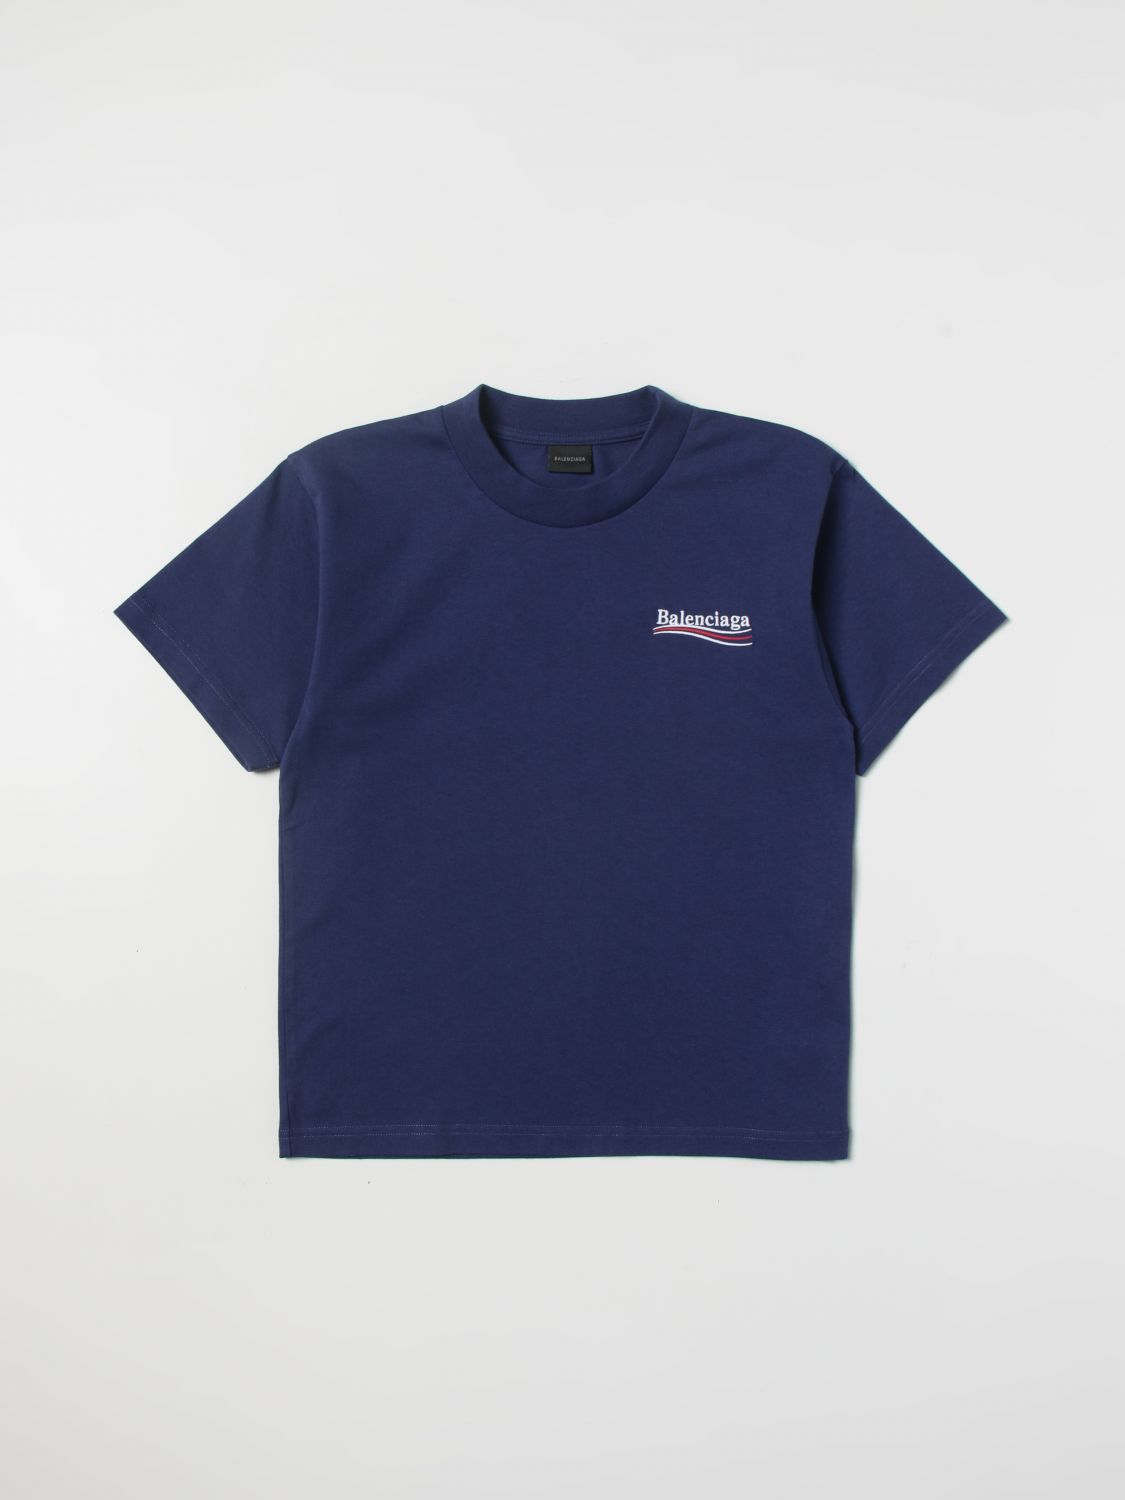 BALENCIAGA: Camiseta para niño, Azul | Camiseta Balenciaga 681864 TMVE7 en línea en GIGLIO.COM